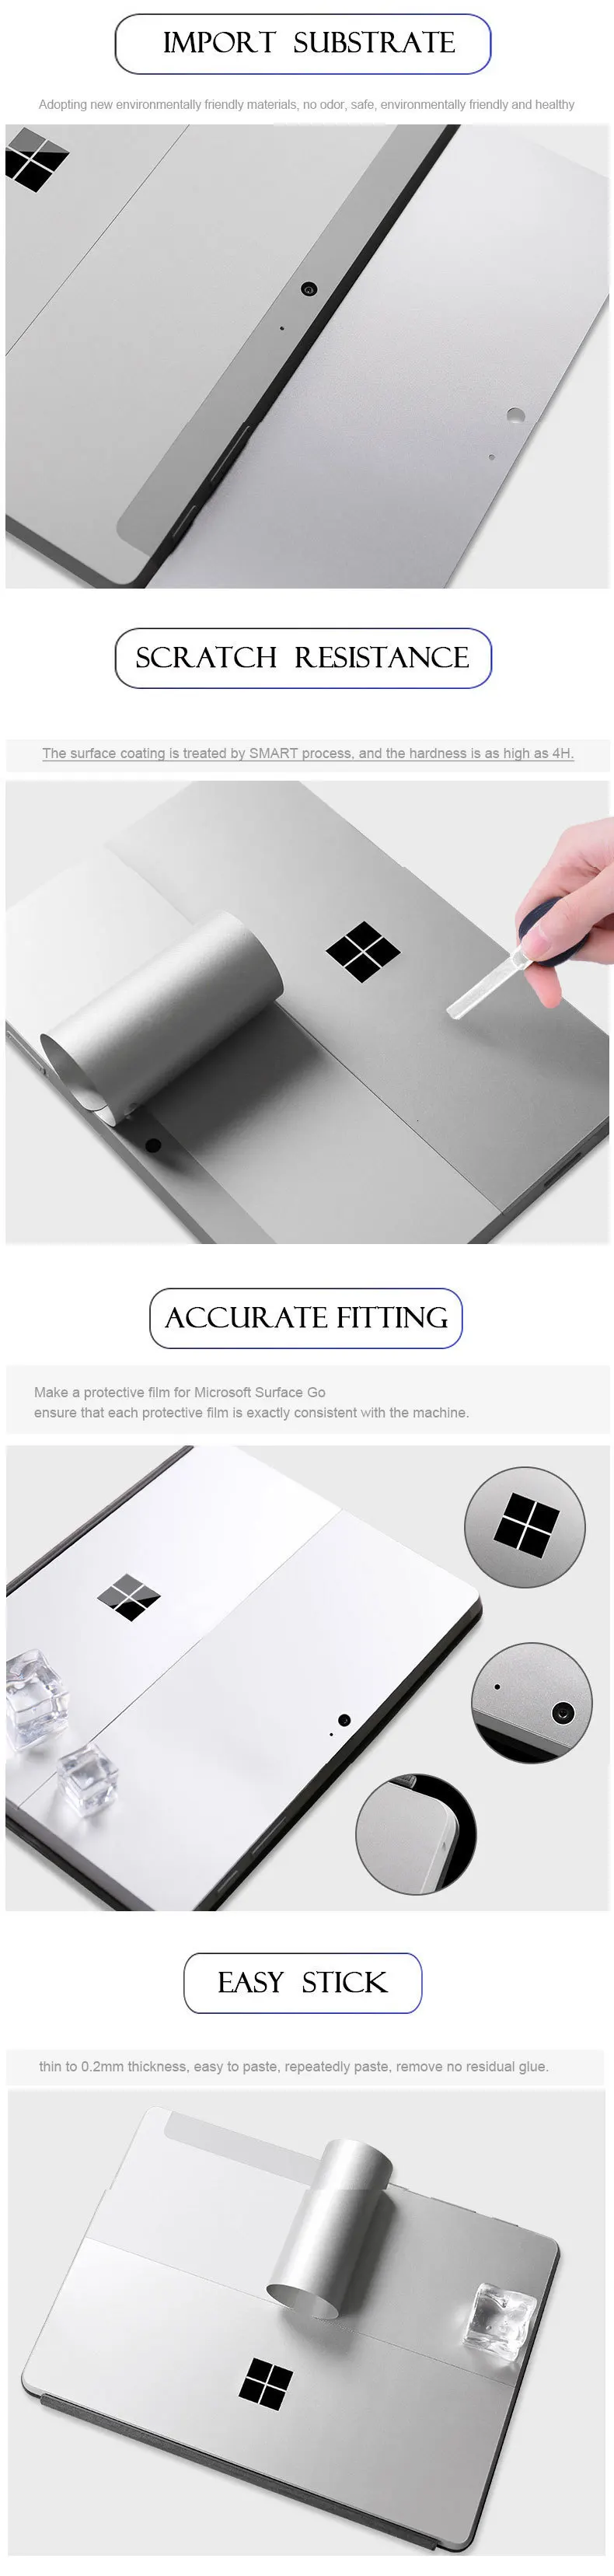 Защитный чехол для кожи, наклейки для microsoft Surface Go, плоский корпус для компьютера, пленка против царапин, легко наклеивается, протектор, упаковка